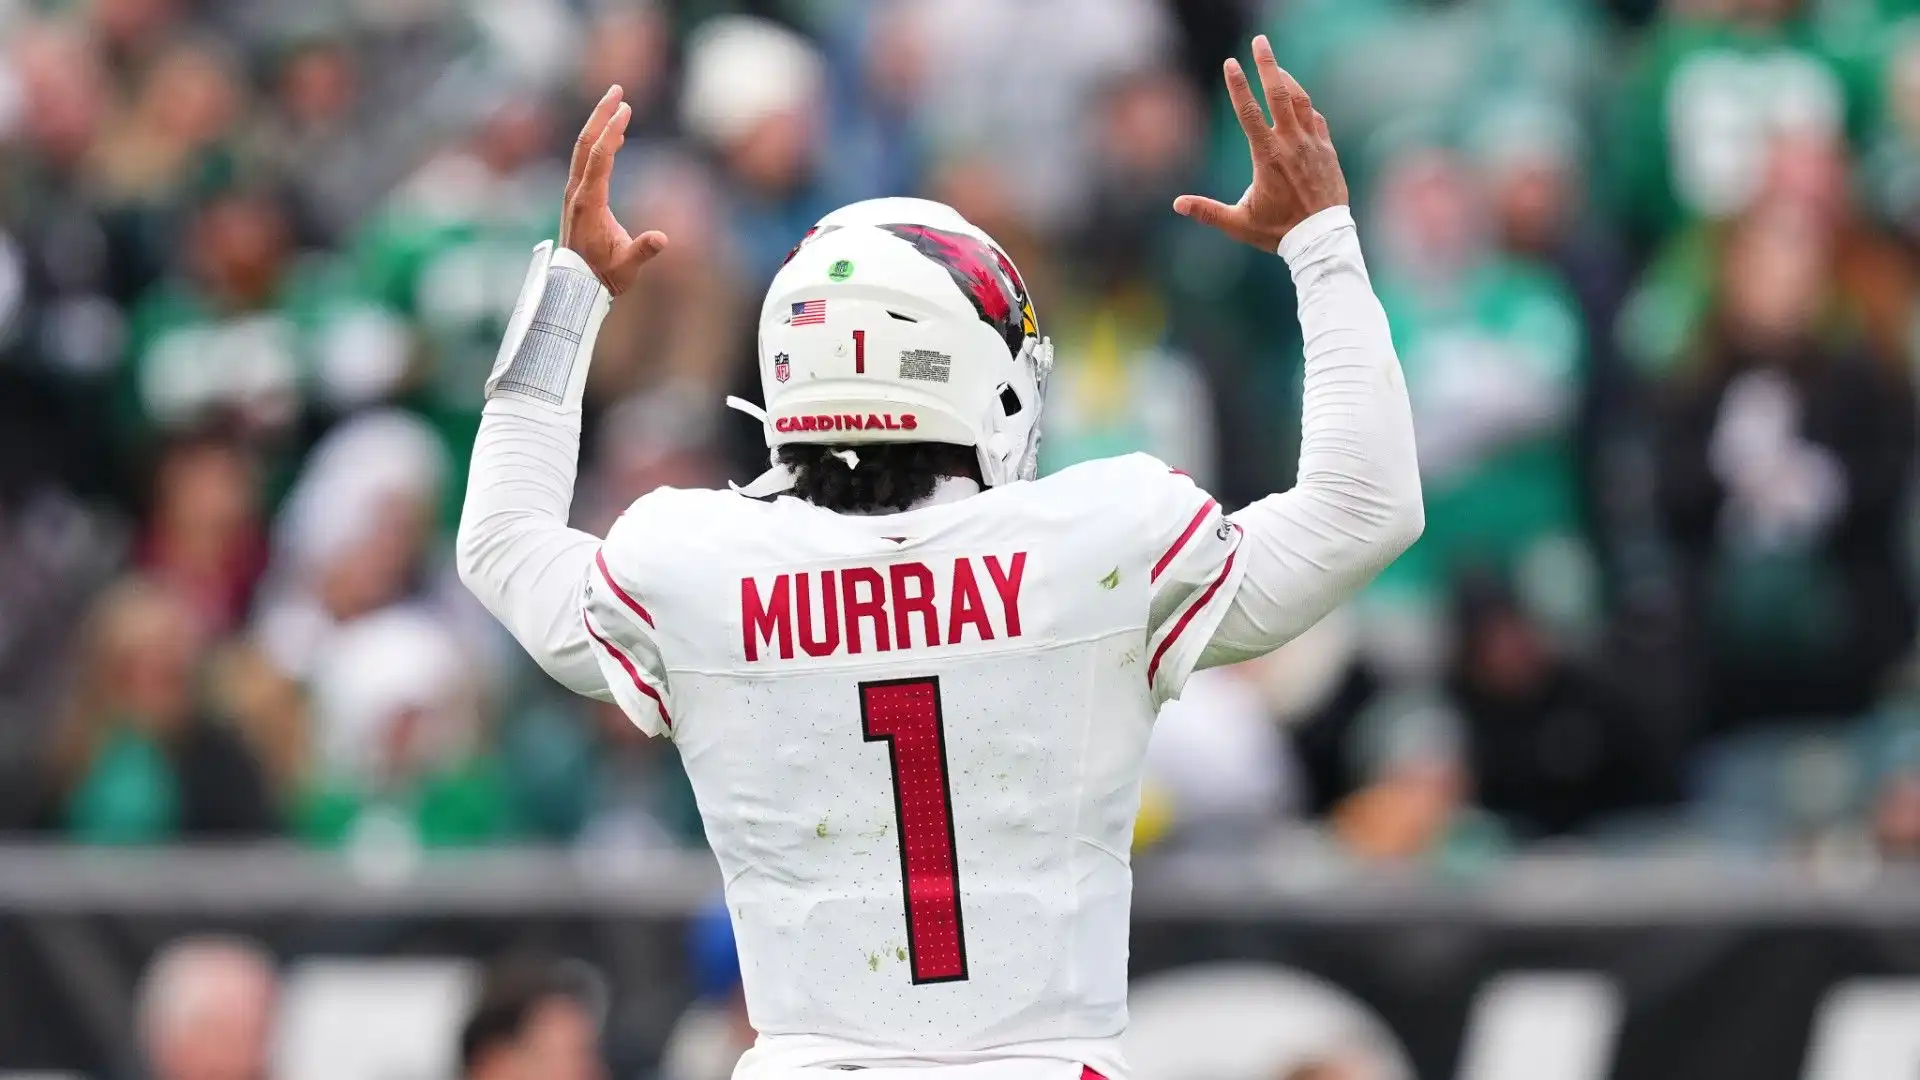 7- Il quarterback degli Arizona Cardinals Kyler Murray ha guadagnato 42,5 milioni di dollari